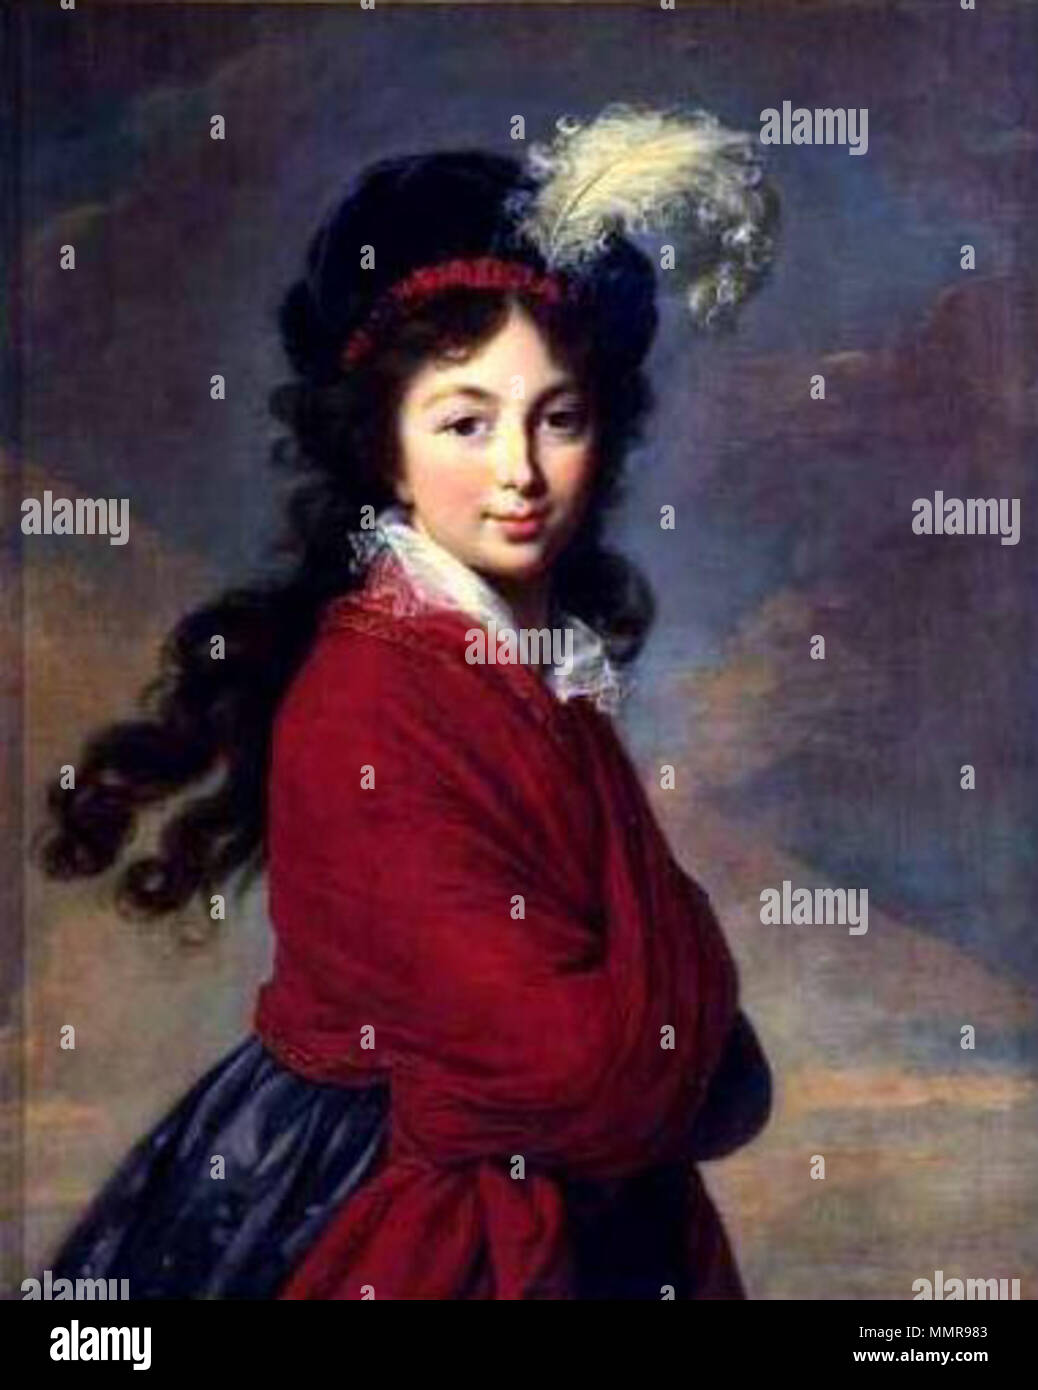 . Inglese: La Grande Duchesse Anna Feodorovna (1795-1796), nato Princess Juliane von di Sassonia Coburgo - Gotha-Saalfeld. Lei era la consorte del Granduca Konstantin Pavlovich della Russia, il secondo figlio di Imperatore Paolo I. Il suo fratello più giovane era Leopoldo I, primo re dei Belgi. La sua sorella più giovane Victoria, duchessa di Kent, fu la madre della Regina Victoria del Regno Unito. Ritratto della Principessa Juliane di Sassonia Coburgo - Gotha-Saalfeld (1795-1796). circa 1795-1796. Anna Fedorovna da E.Vigee-Lebrun Foto Stock